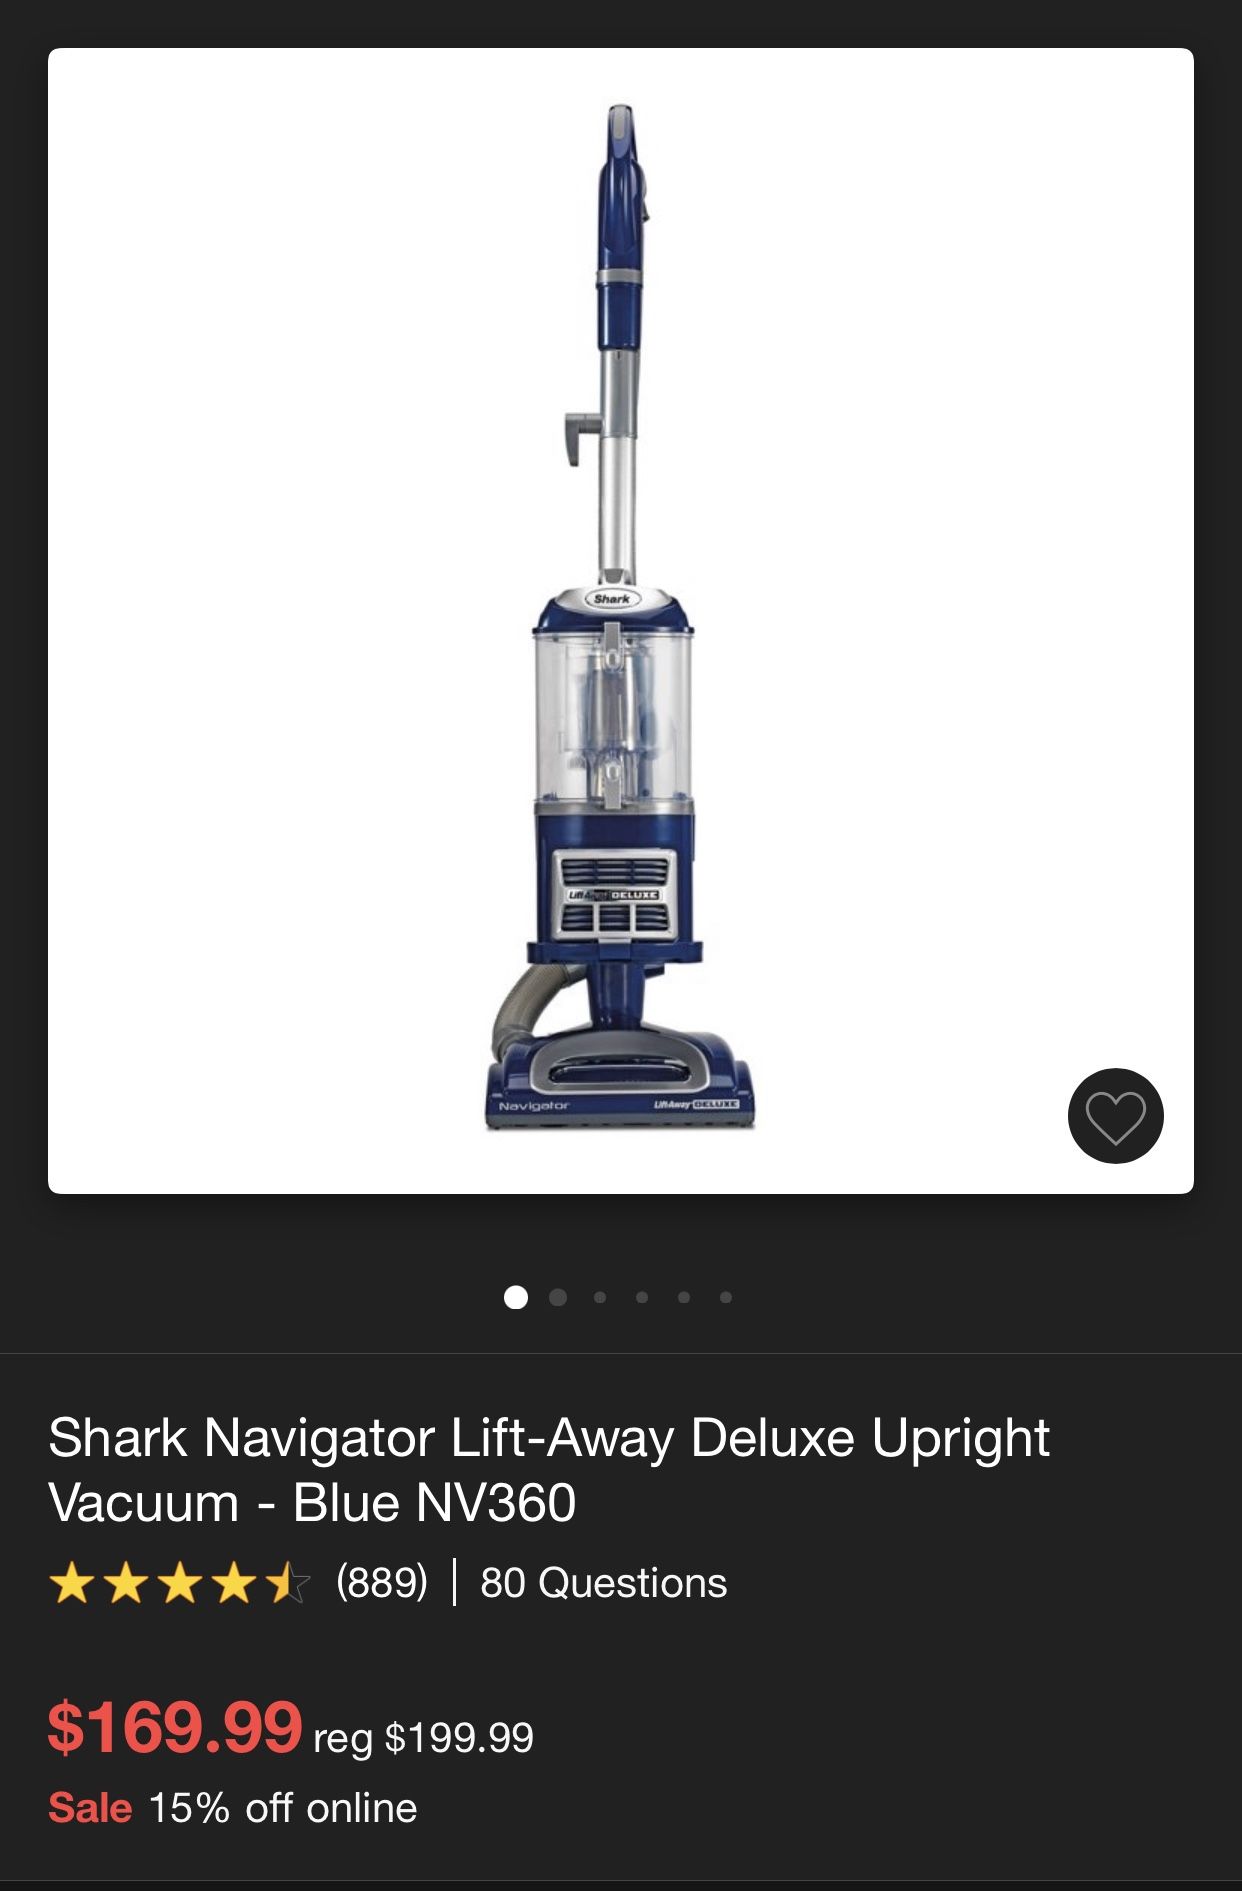 Shark Vacuum Lift-Away (New)